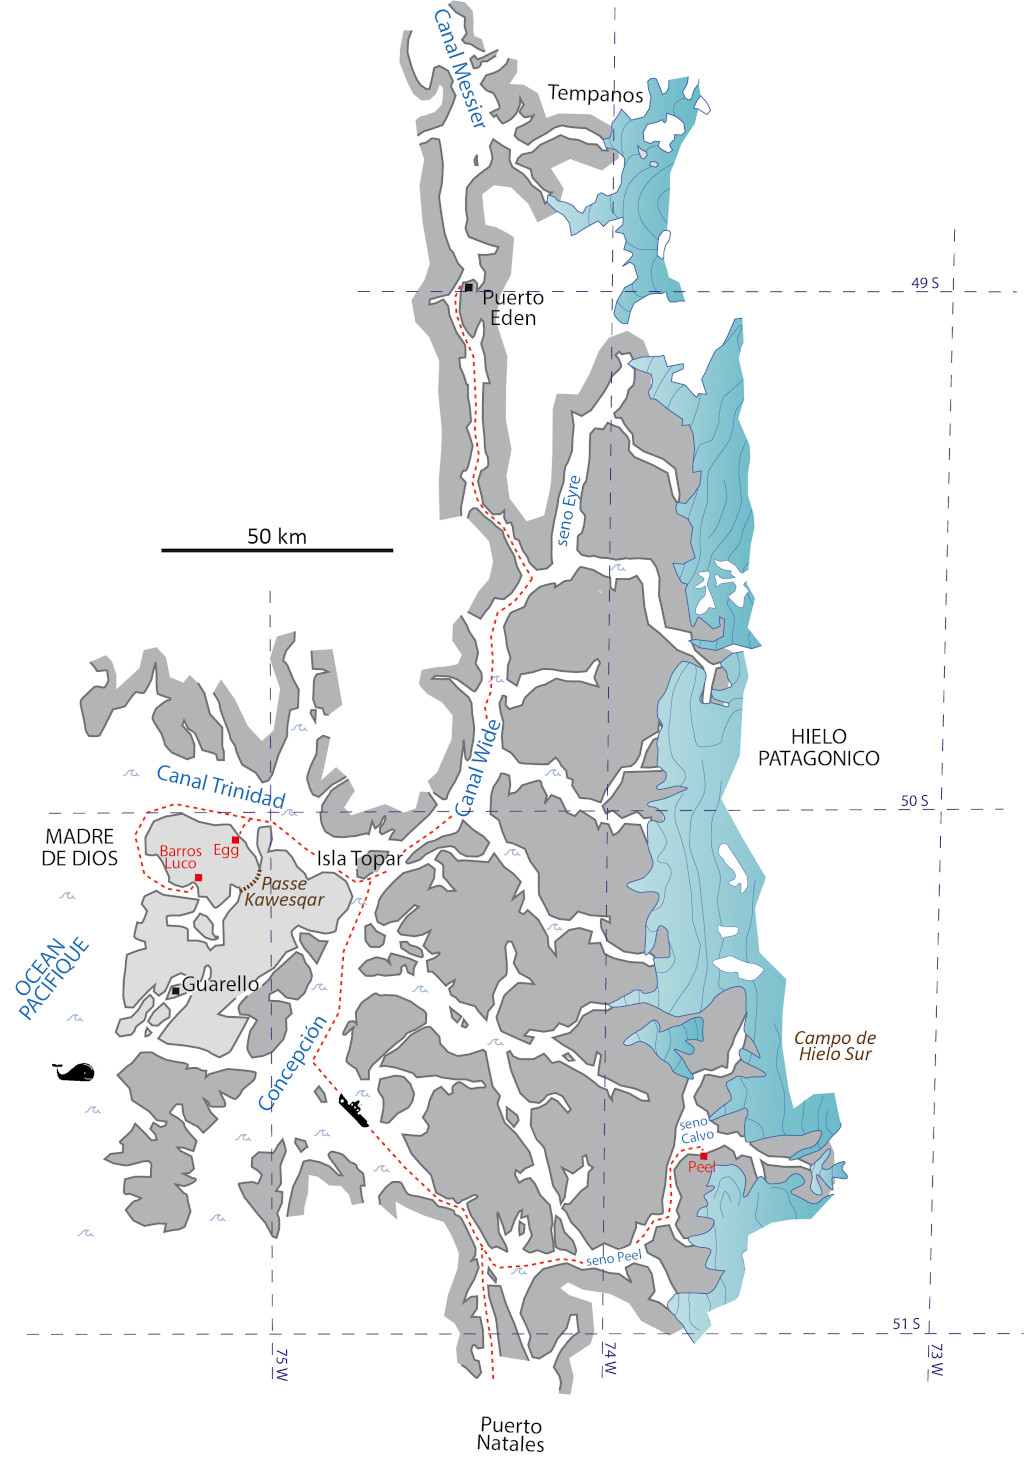 Carte simplifiée des différents objectifs du projet UP2023 avec un départ officiel de Puerto Eden vers les différents camps temporaires du Barros Luco, du Seño Egg et du Glacier Peel